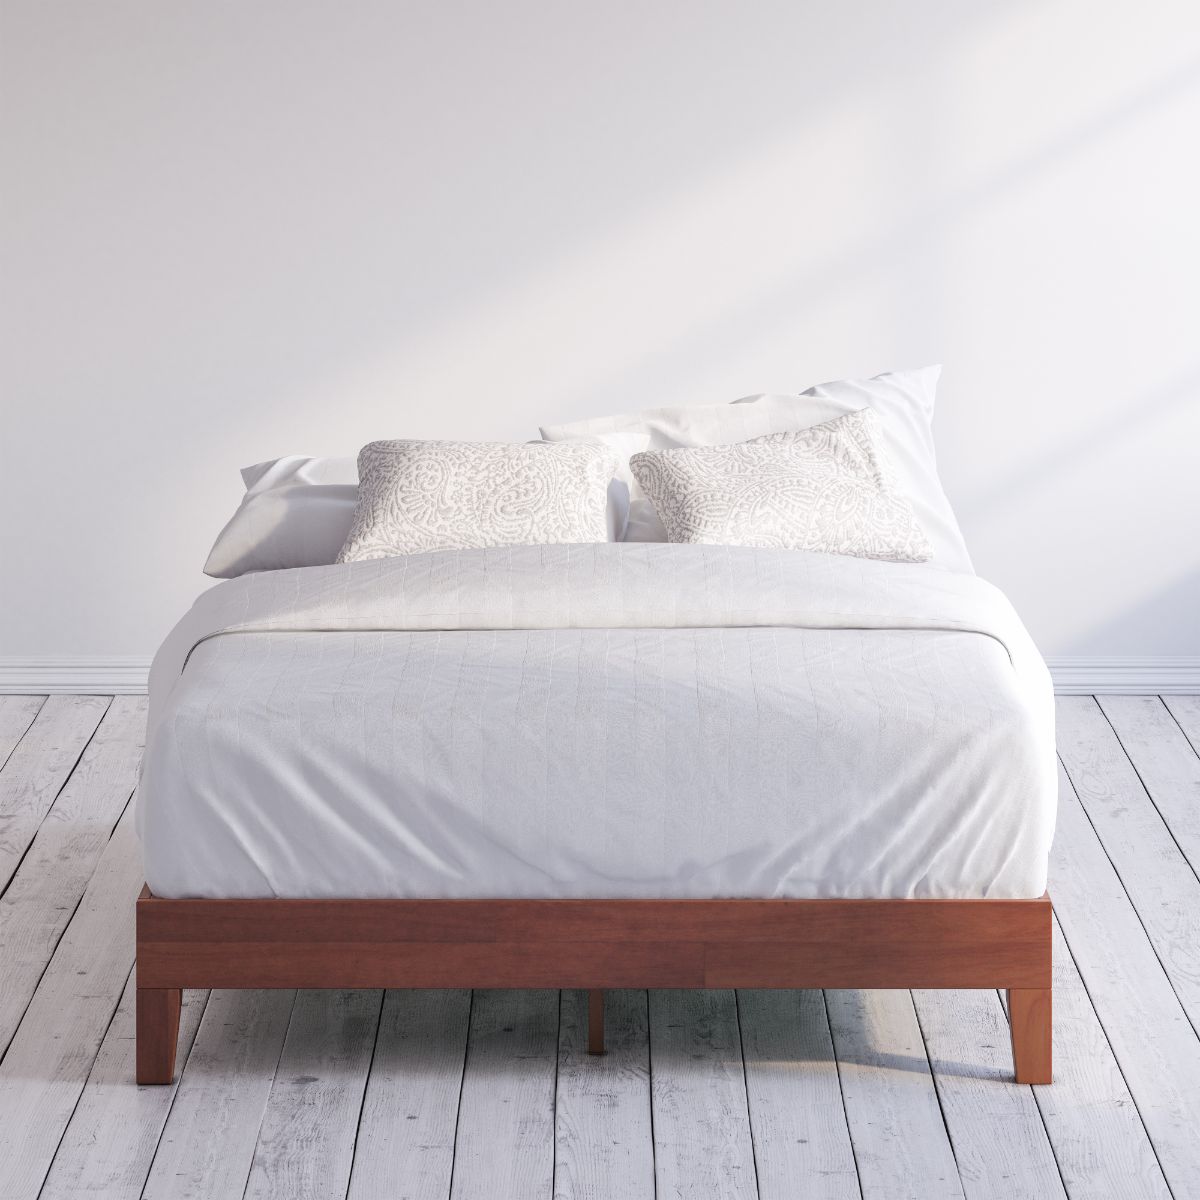 Wen Deluxe Wood Platform Bed Frame , Zinus Full